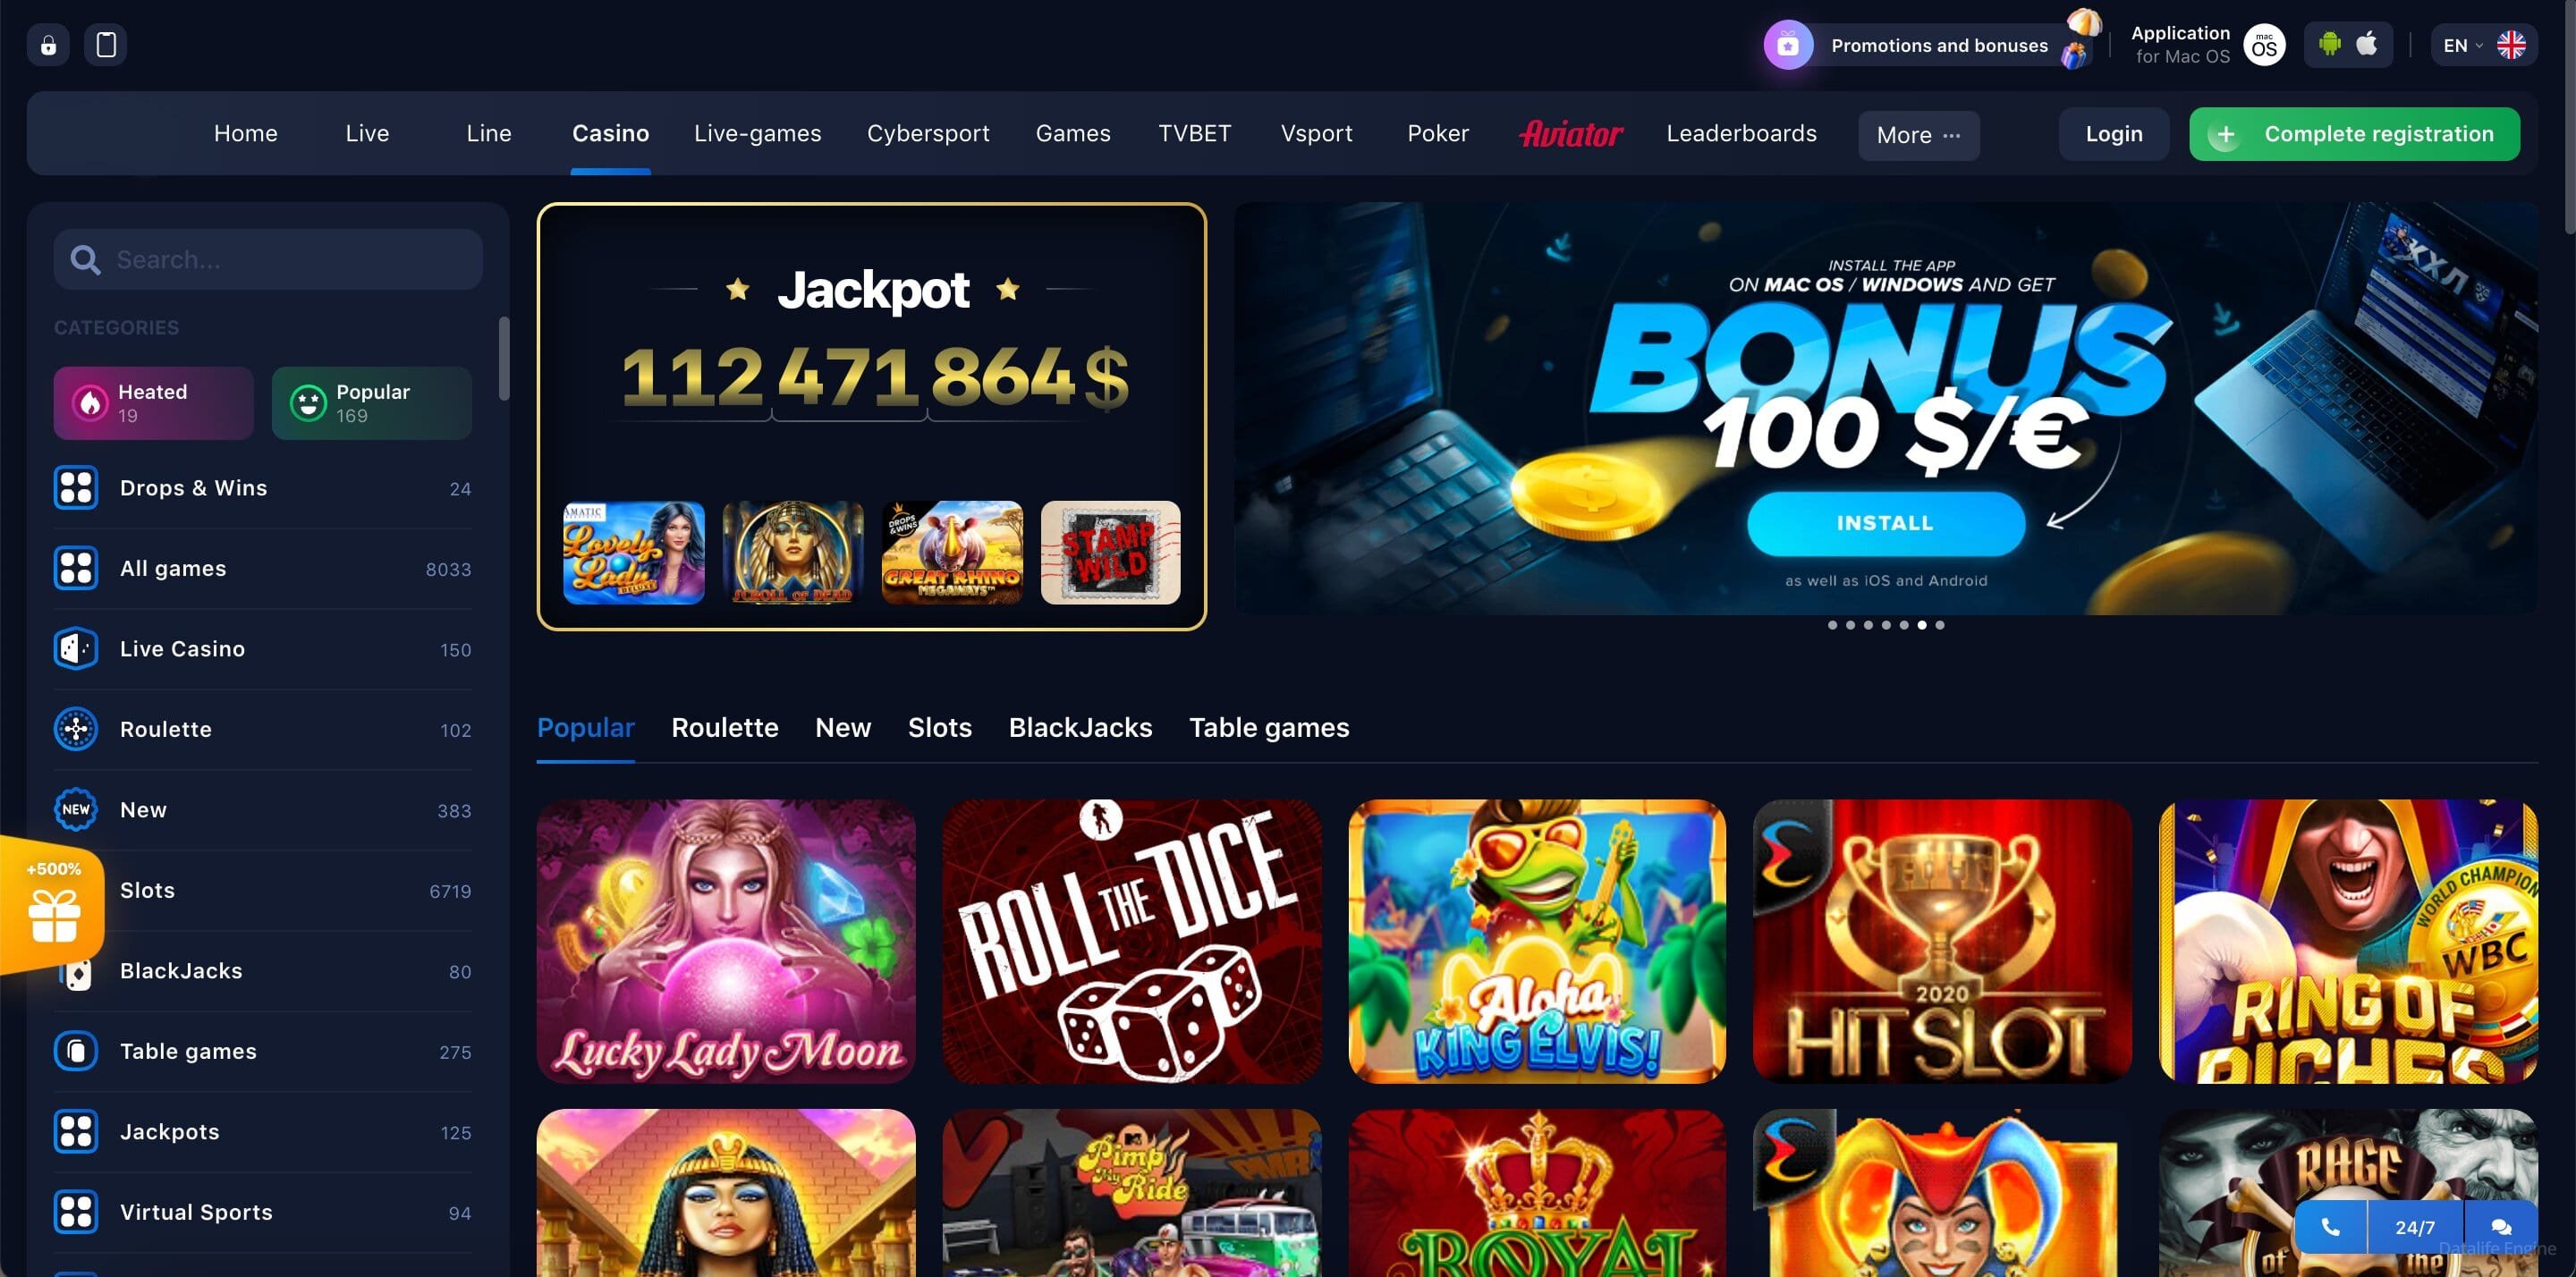 Friends casino официальный сайт friendcasino online максбет казино онлайн официальный игровой